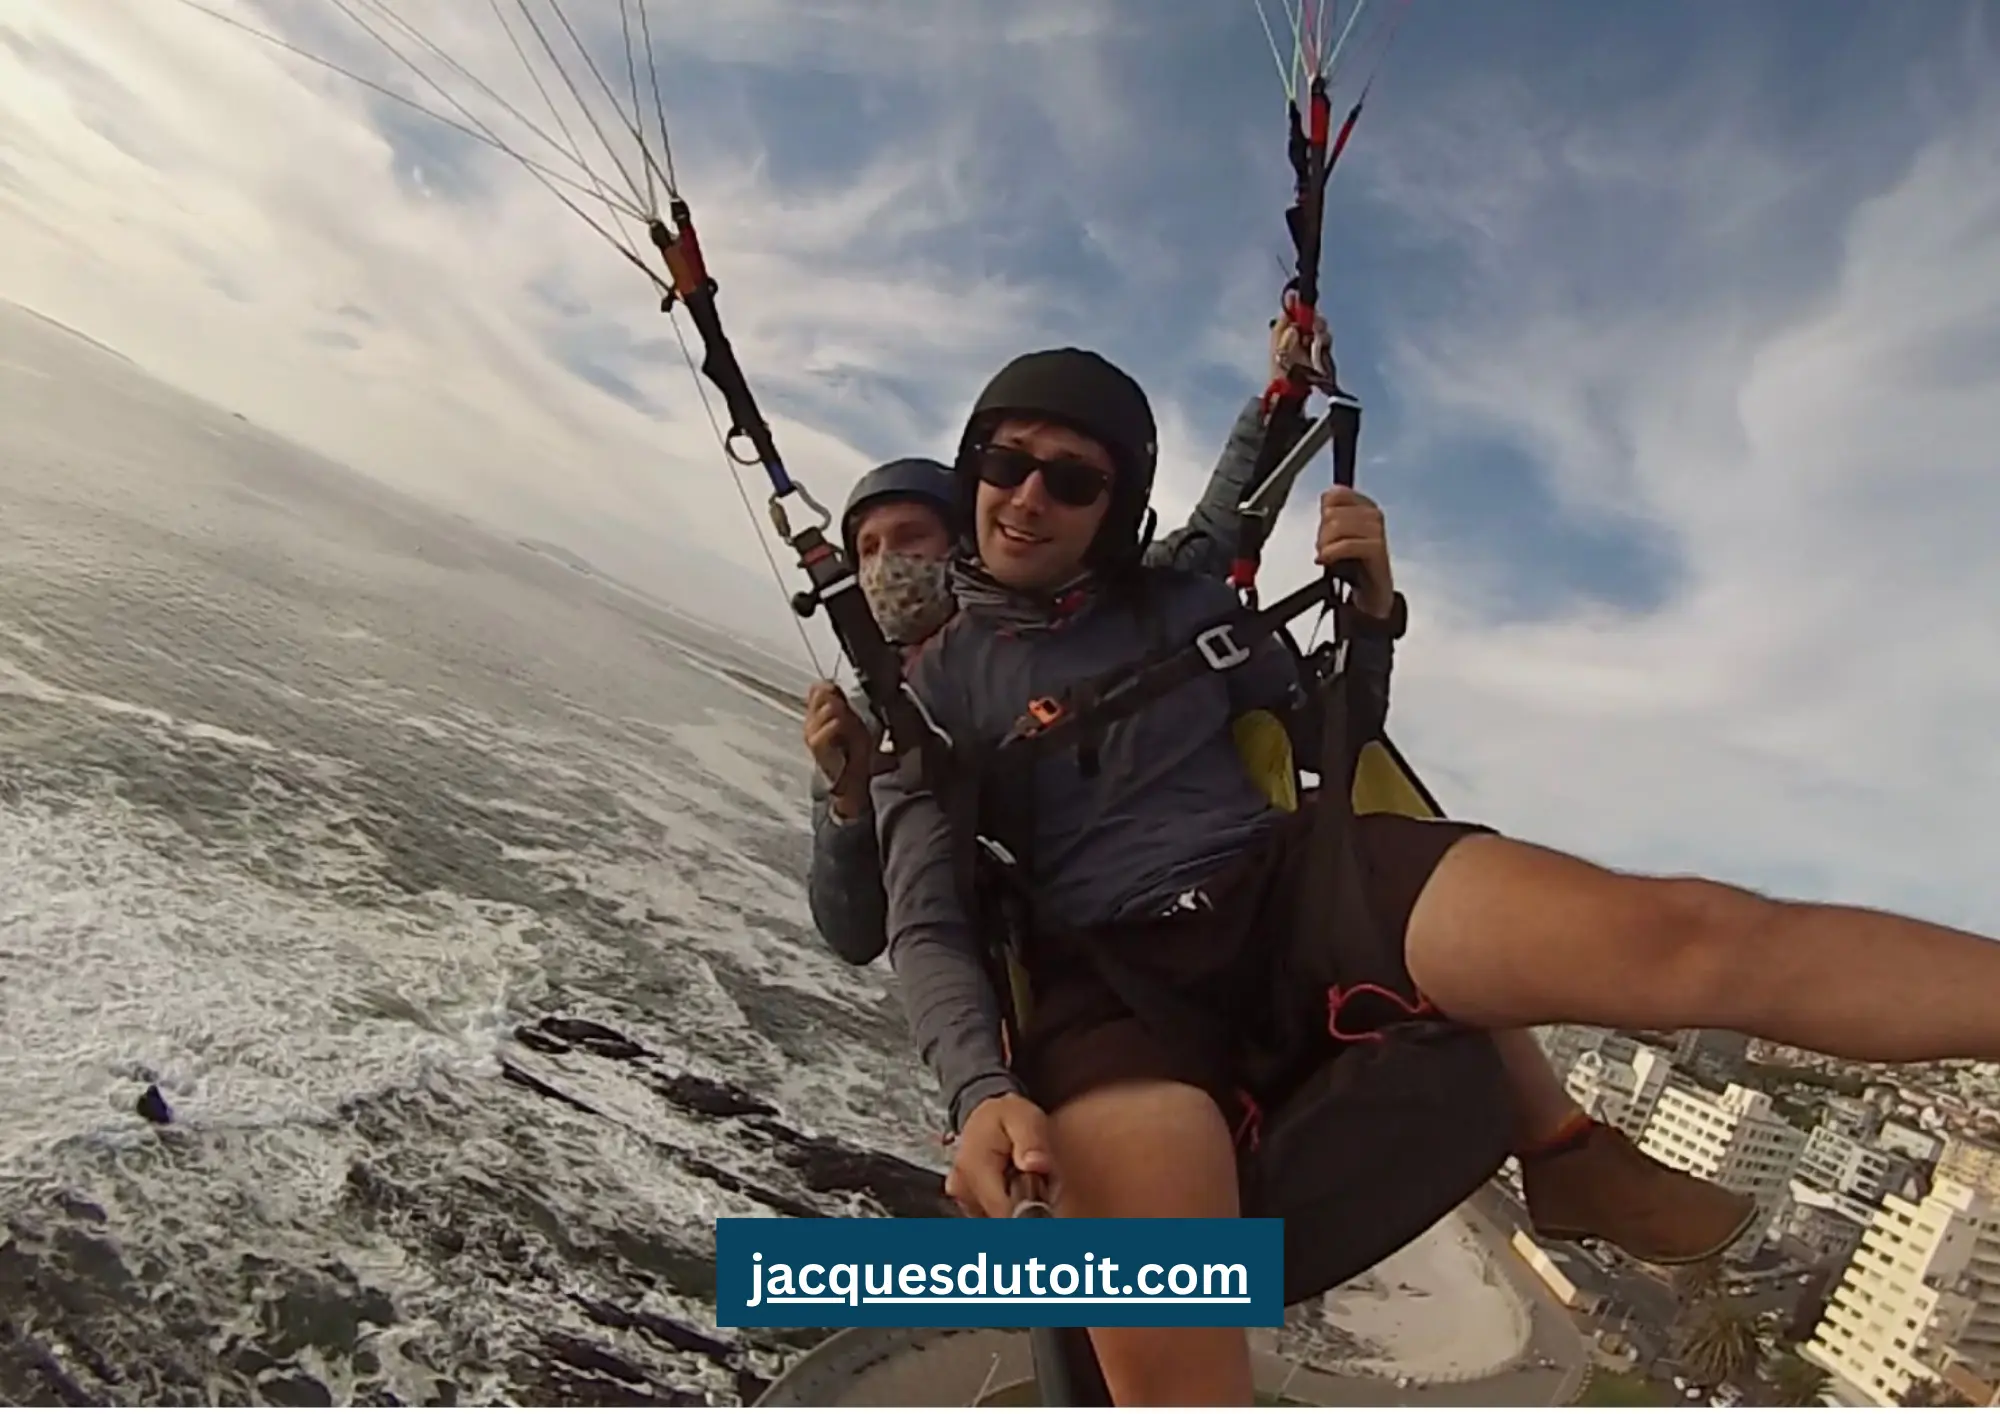 Jacques du Toit paragliding in Cape Town, South Africa. jacquesdutoit.com